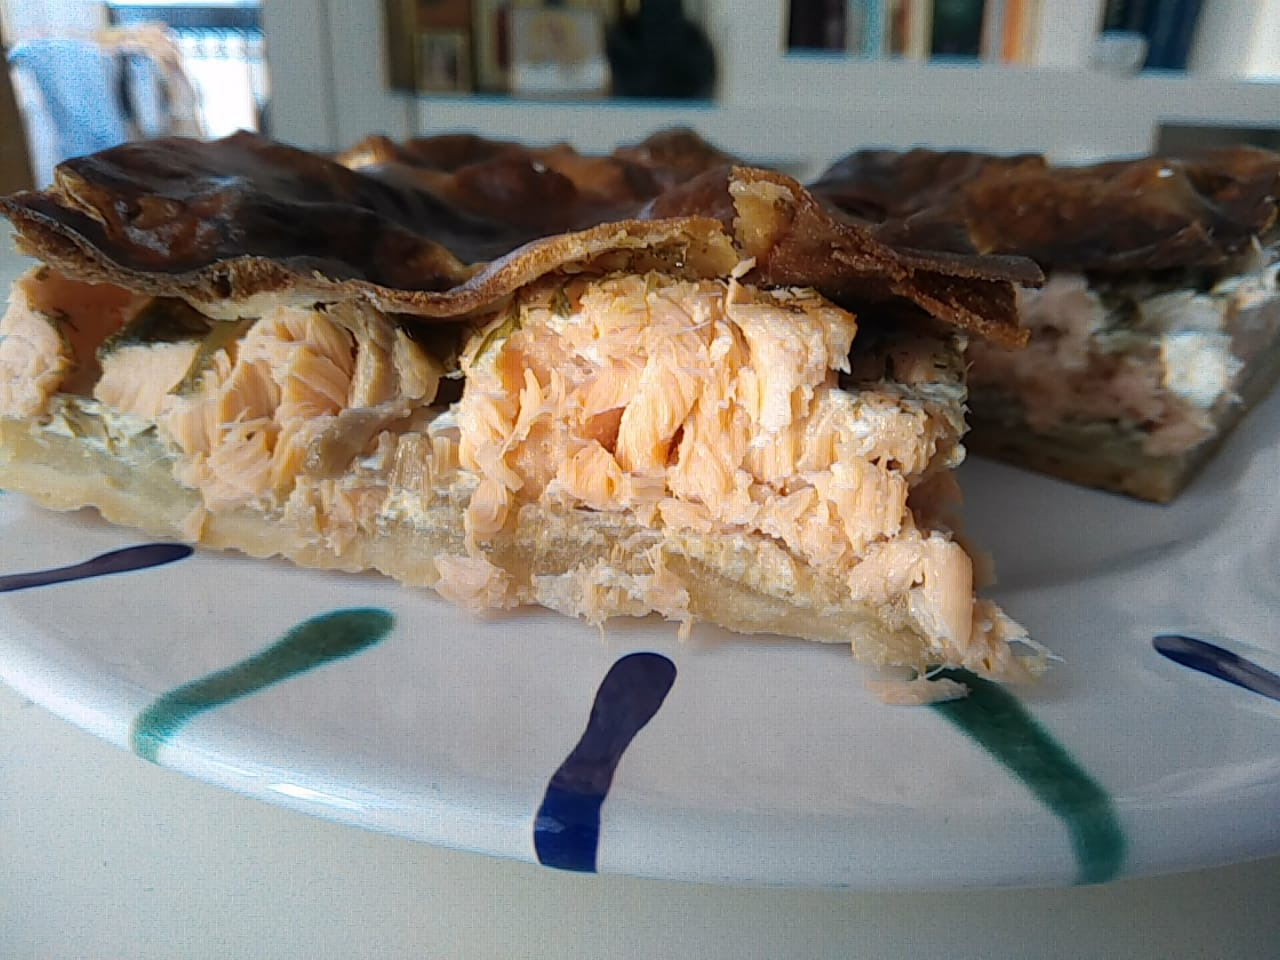 Рыбный пирог открытый и закрытый - как вкусно приготовить тесто и начинку по рецептам с фото